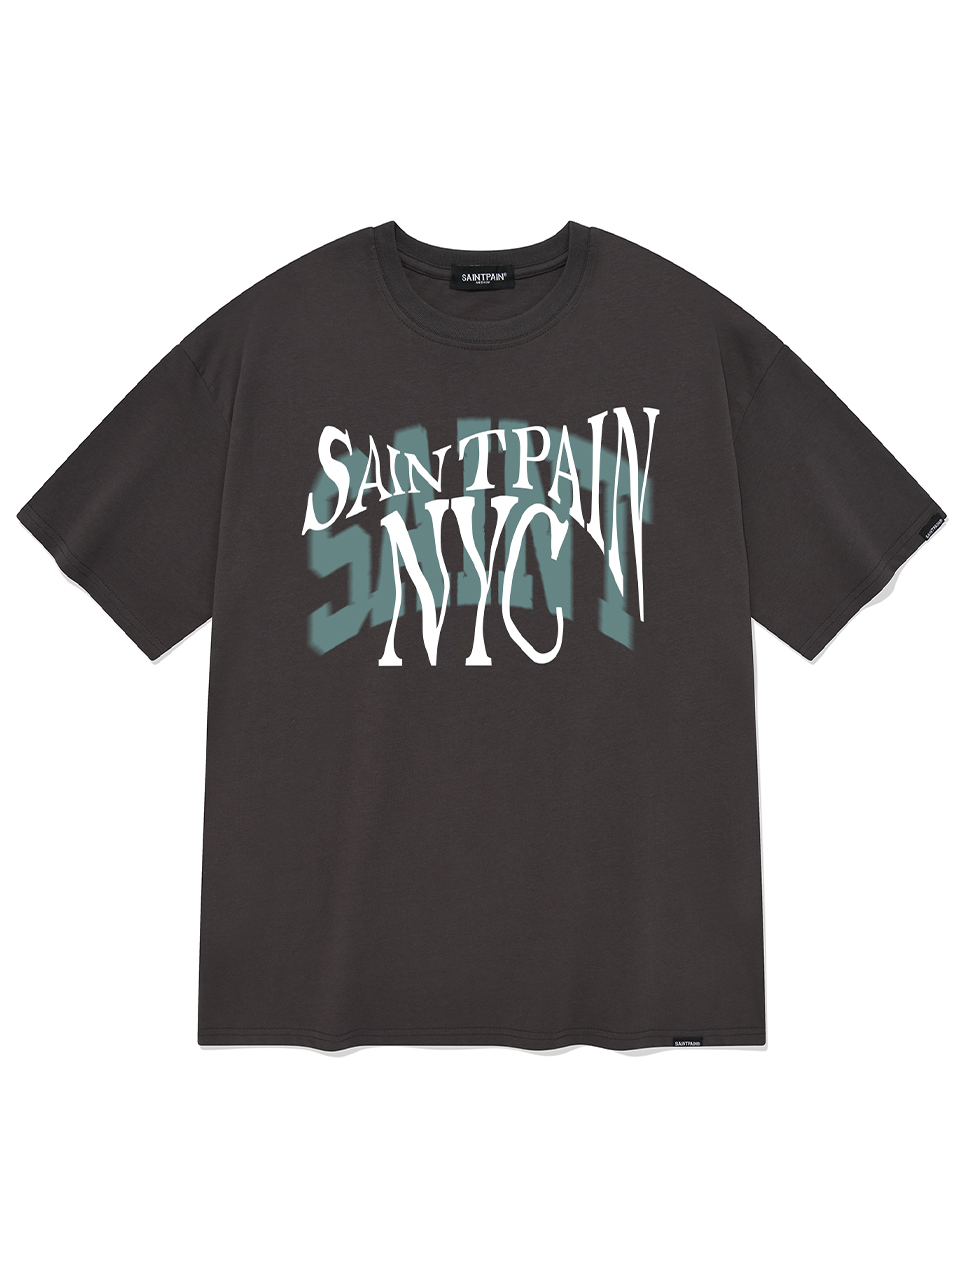 SP 피그먼트 플로우 NYC 반팔 티셔츠-차콜